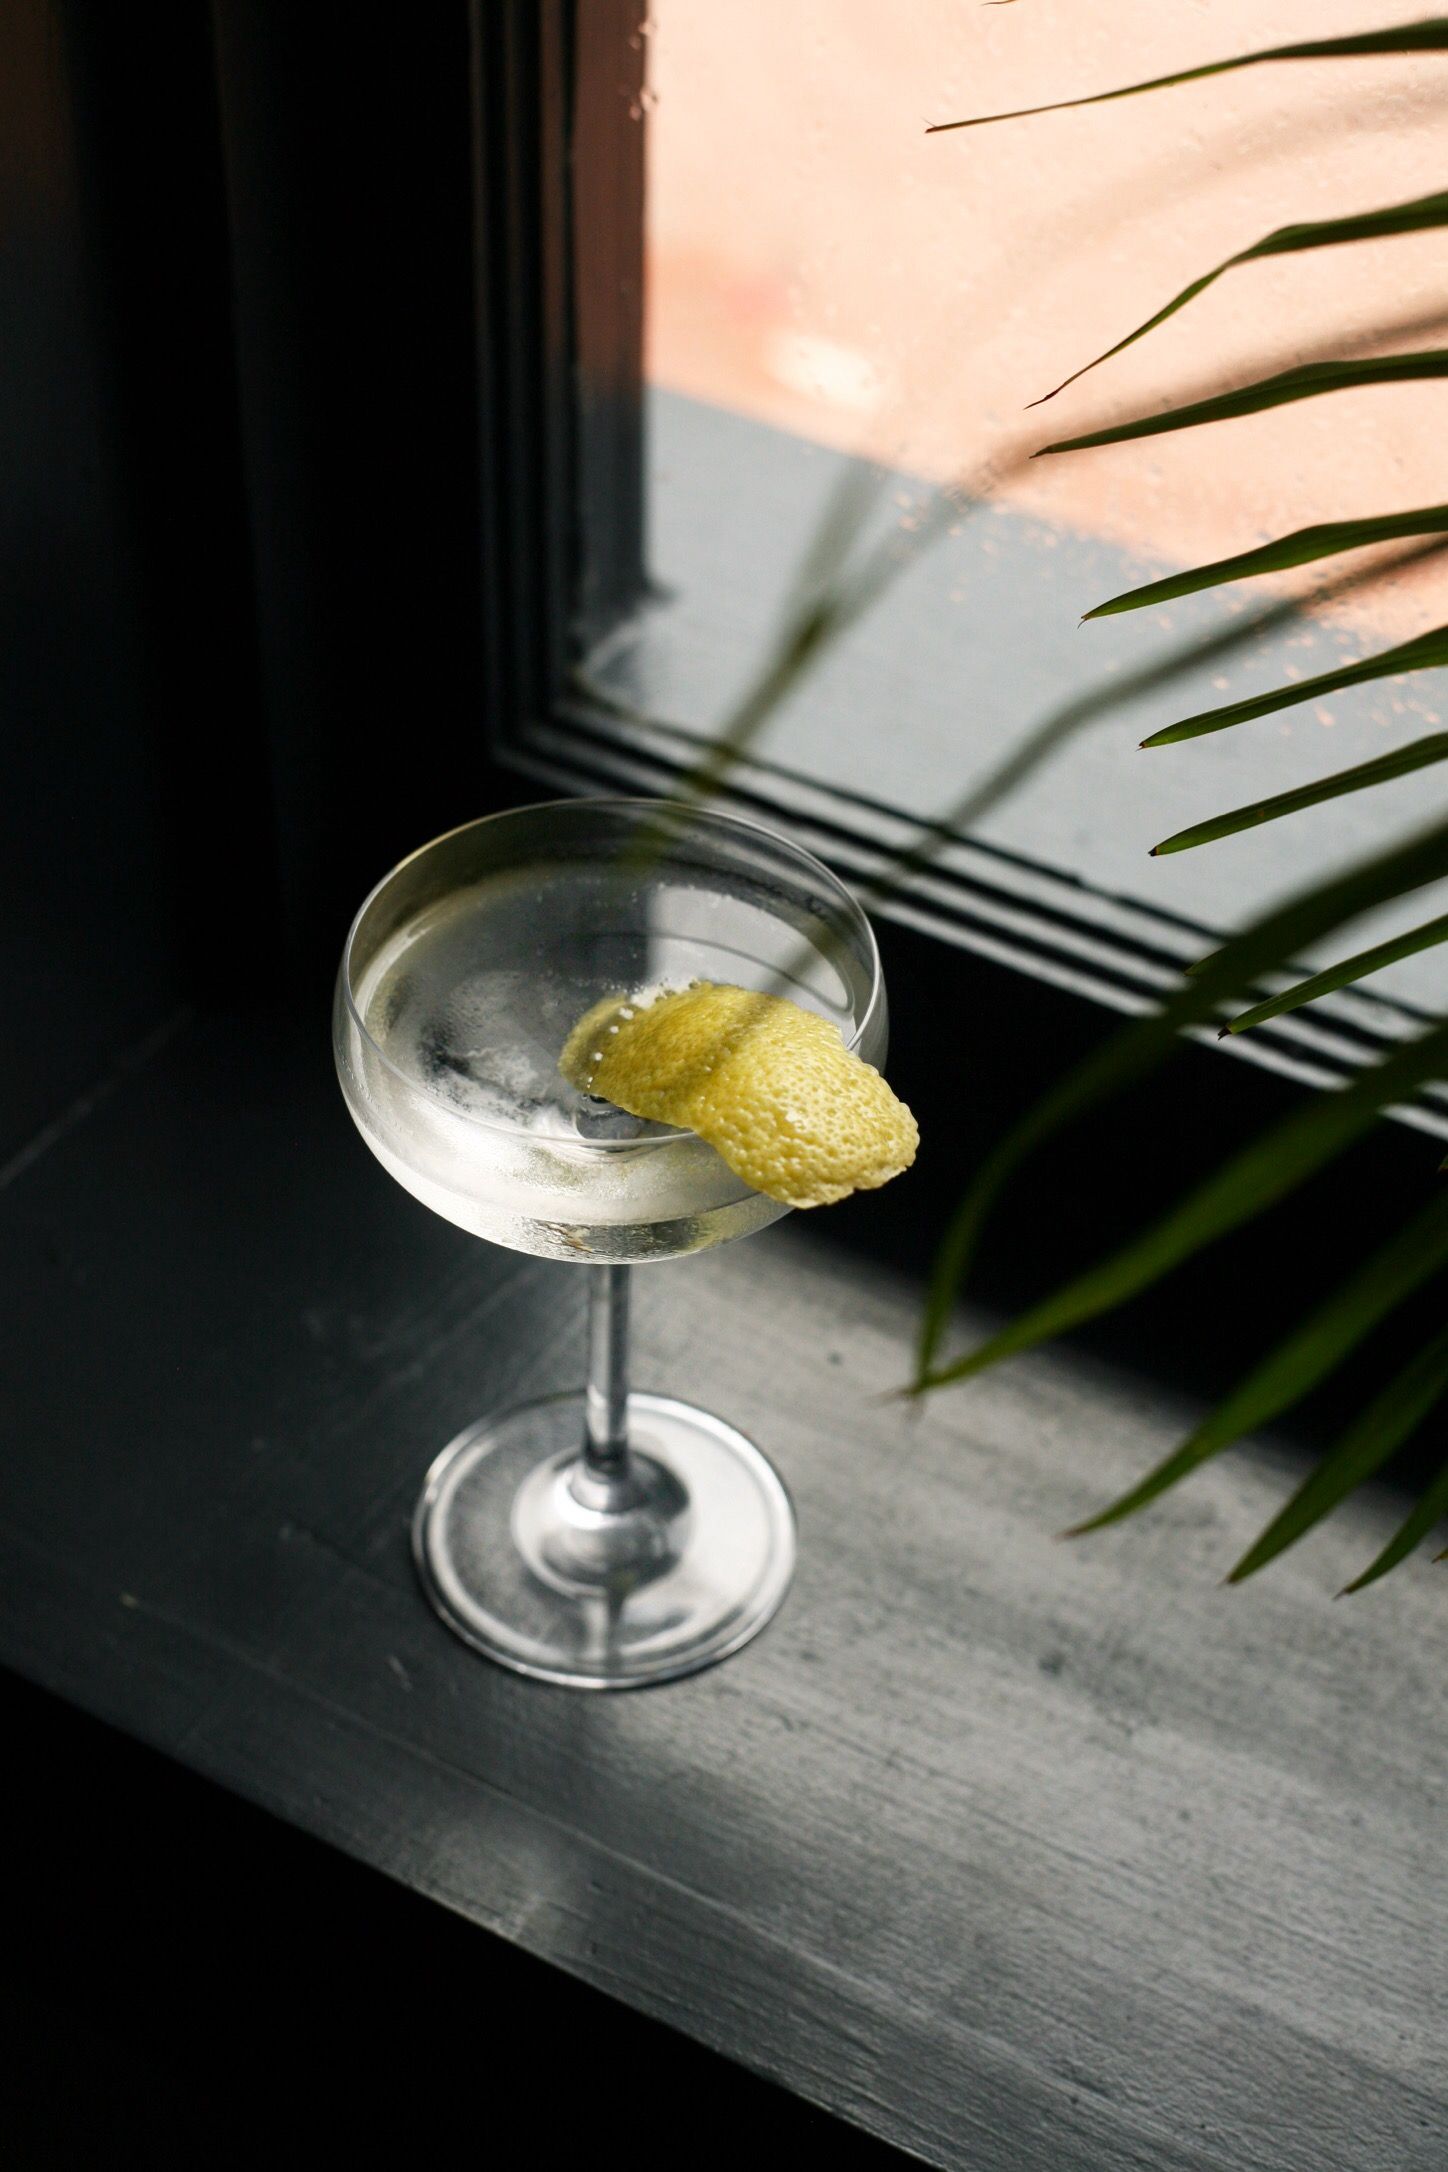 26 Martini - To Make A Martini Cocktail Gin or Vodka